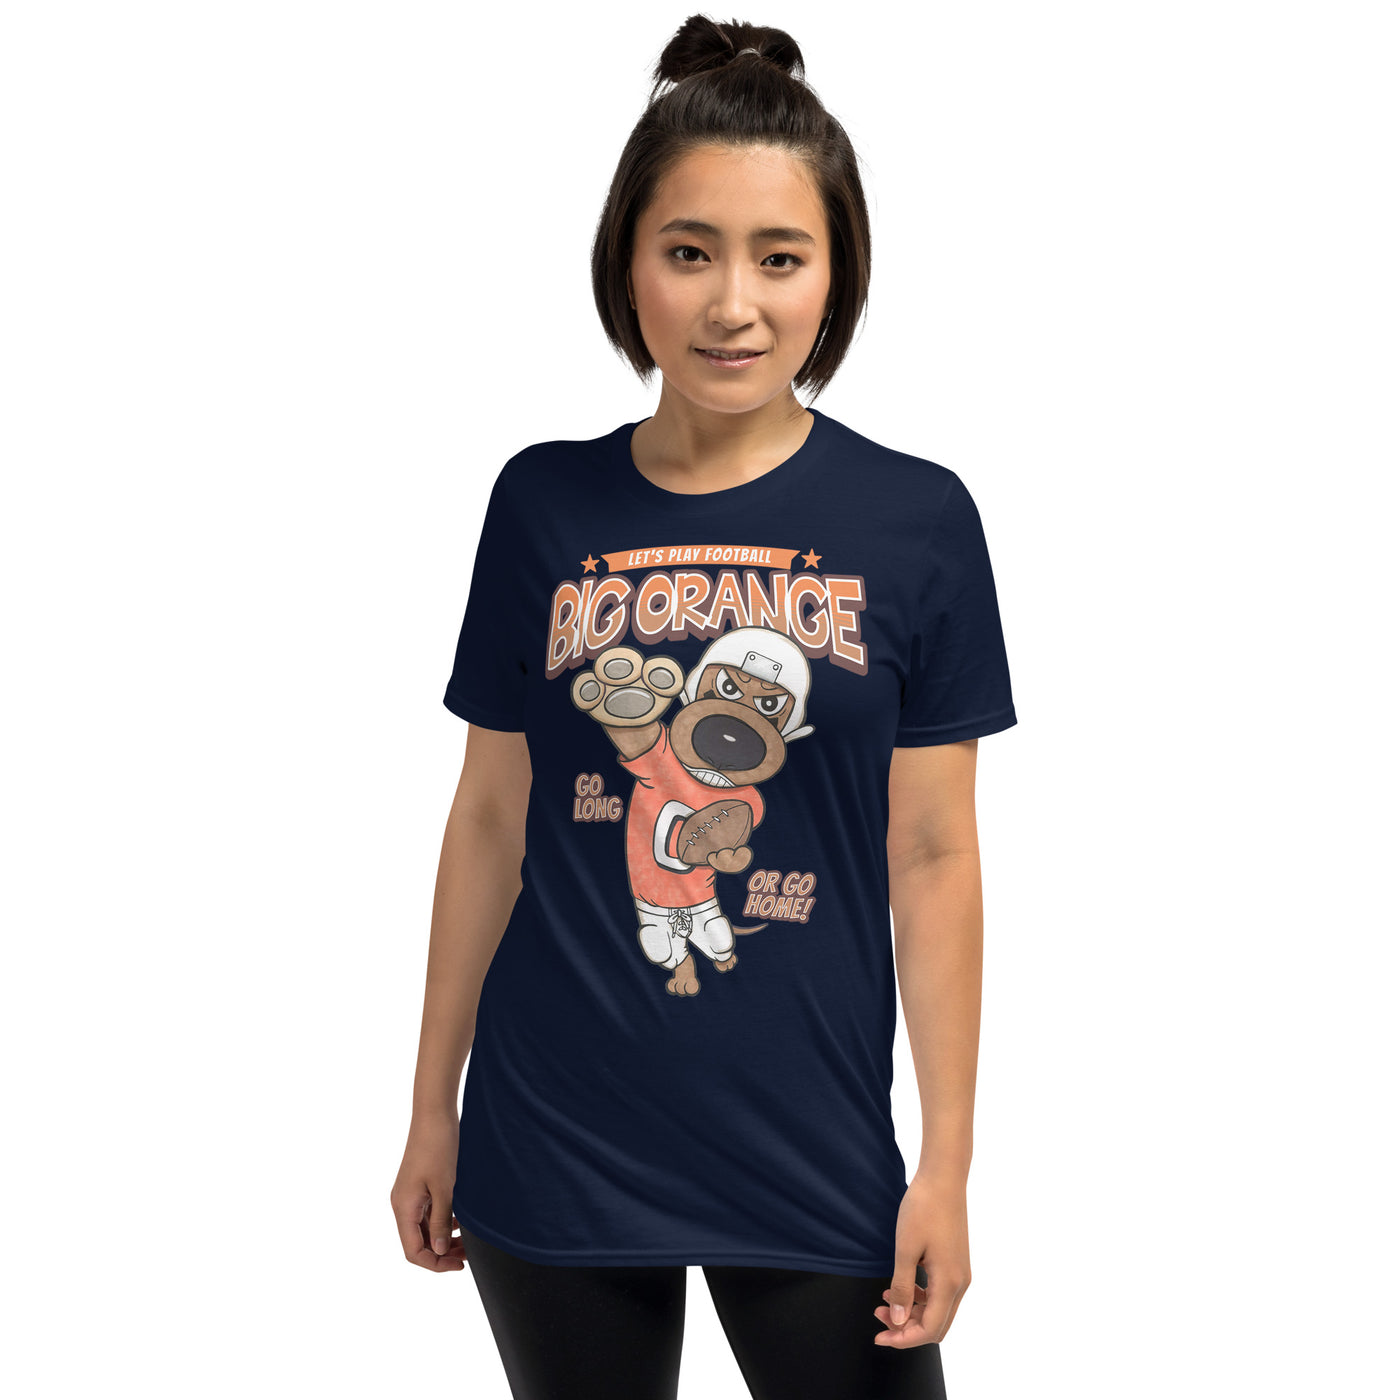 Cute Funny Dachshund Doxie Dog Football Unisex T-Shirt